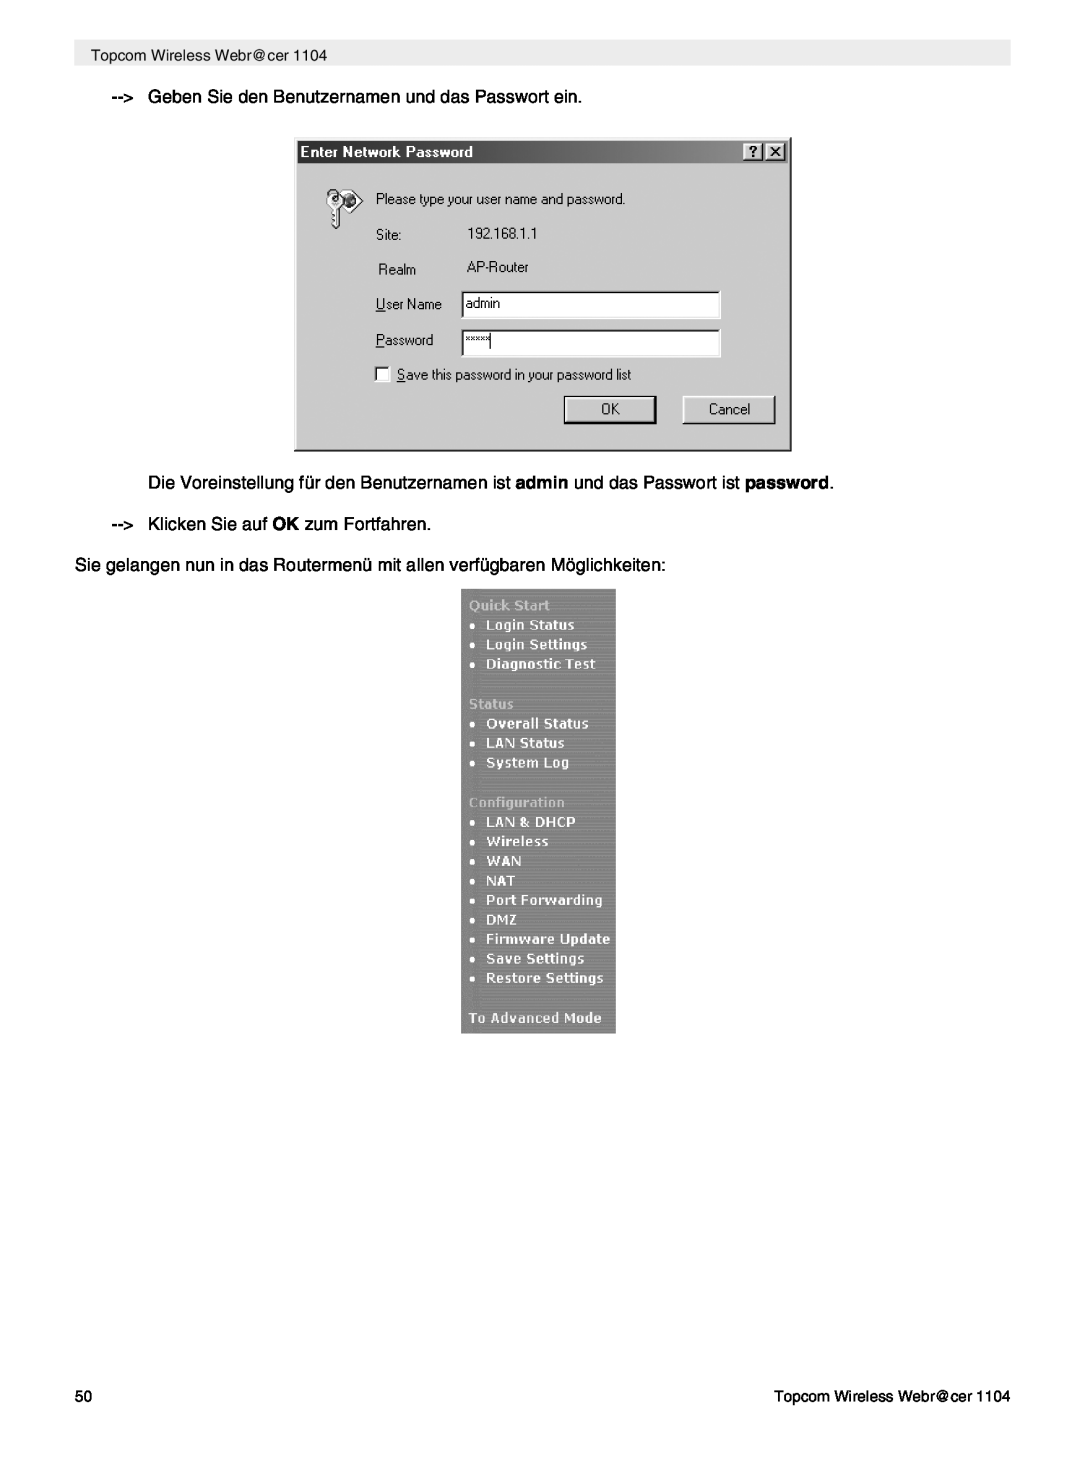 Topcom 1104 manual do utilizador Geben Sie den Benutzernamen und das Passwort ein, Topcom Wireless Webr@cer 